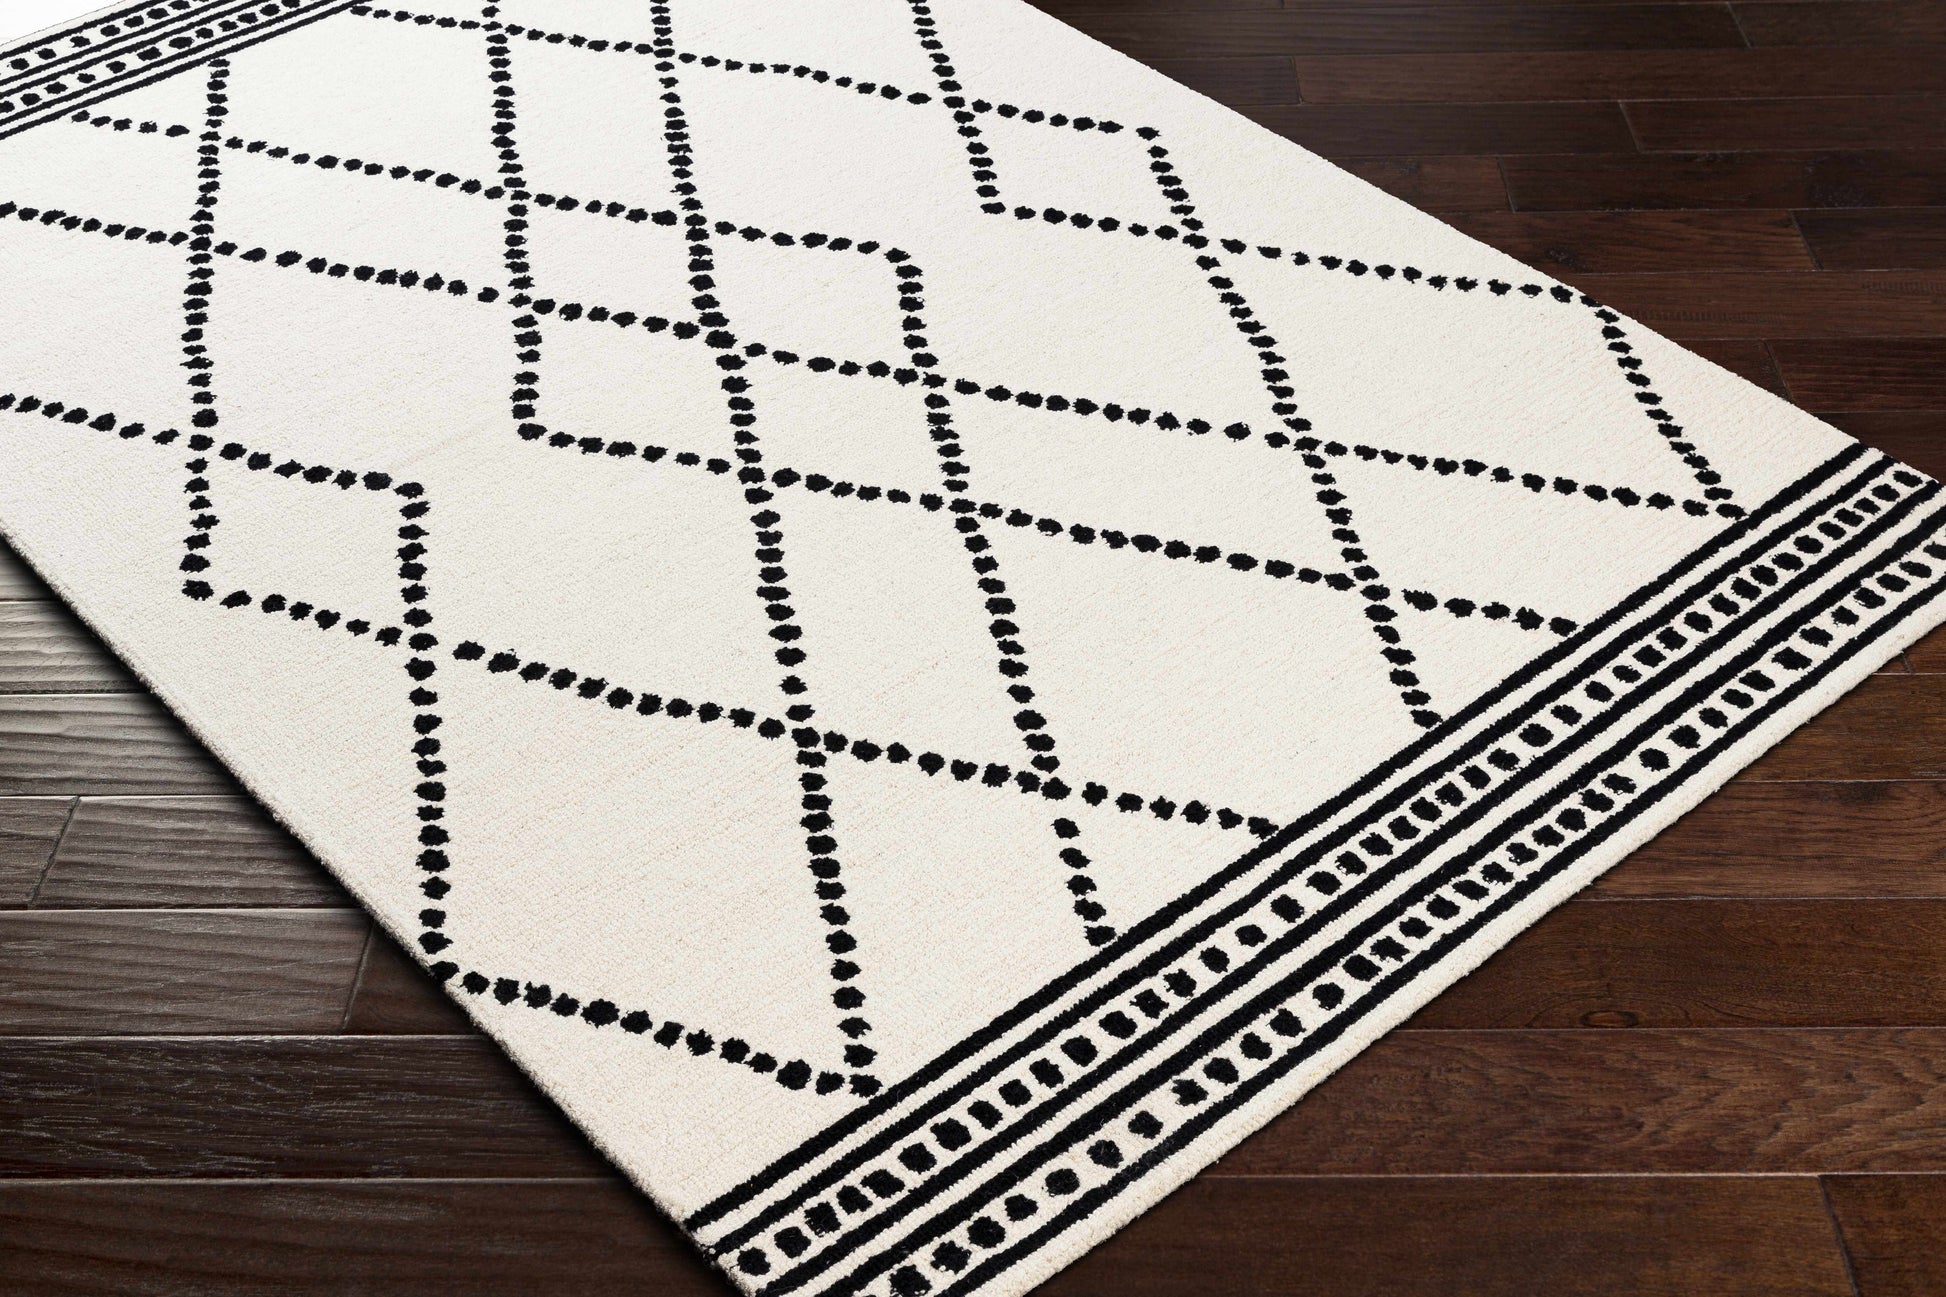 Kochi Zara Geometric Cream Wool Rug – RugsDirect